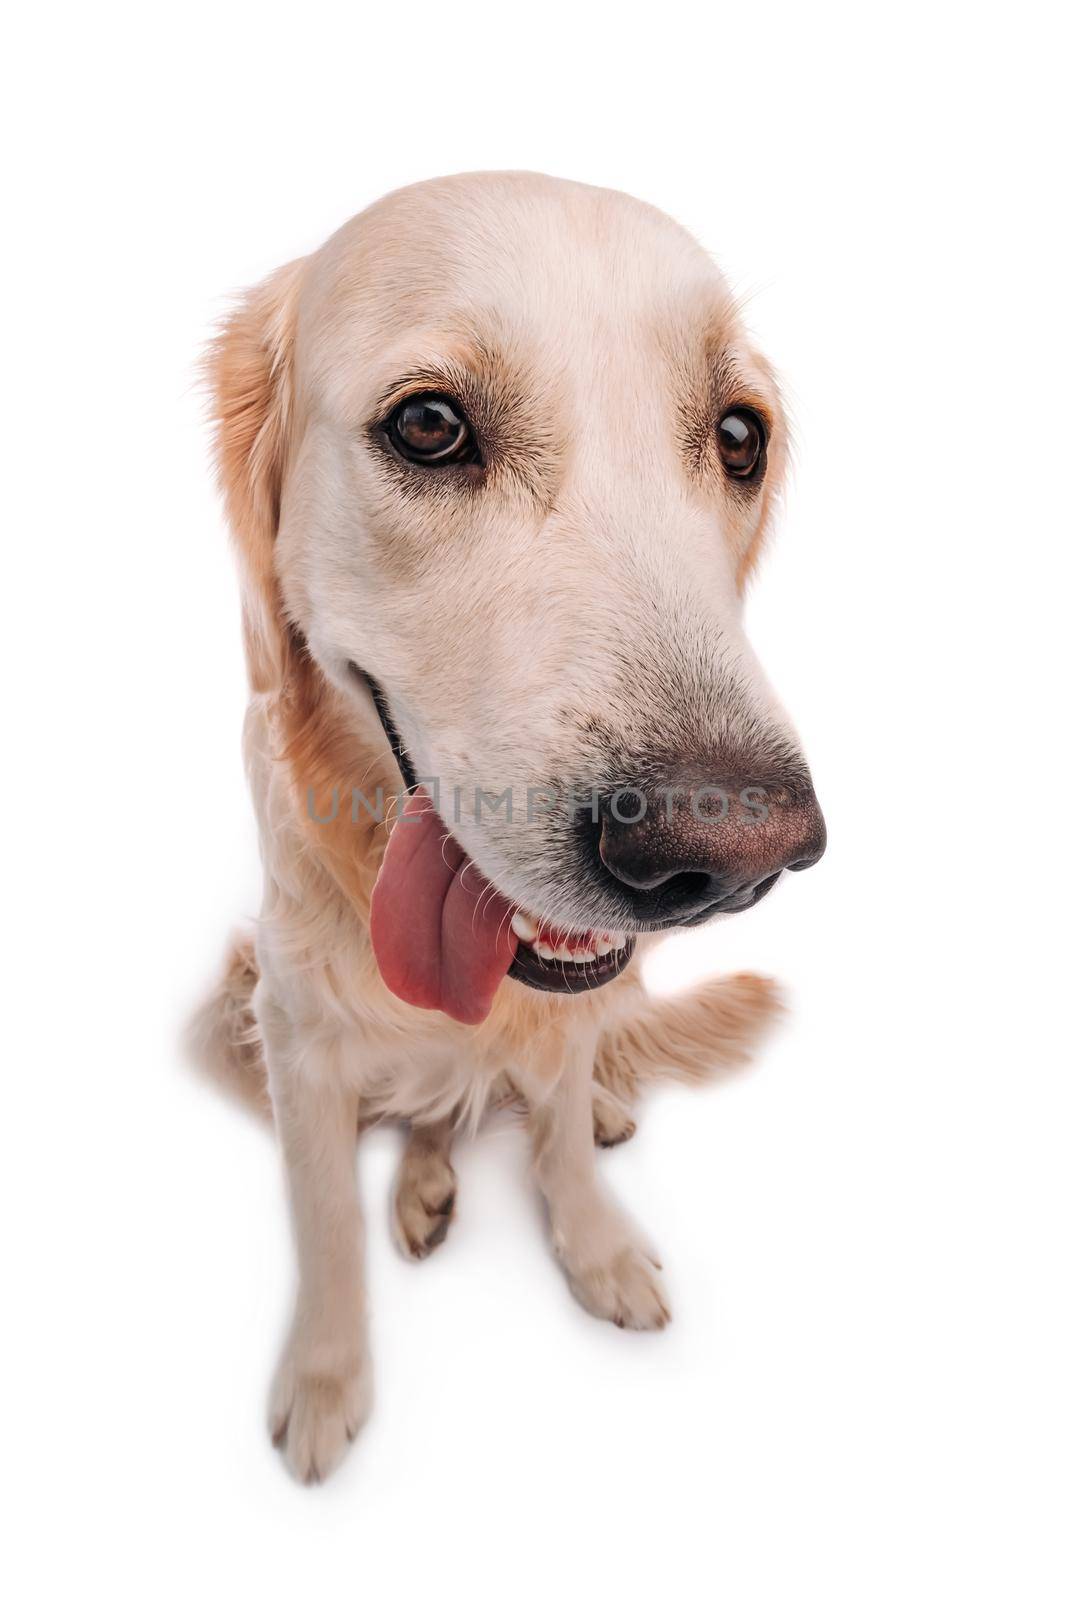 Golden retriever dog isolated on white background by GekaSkr